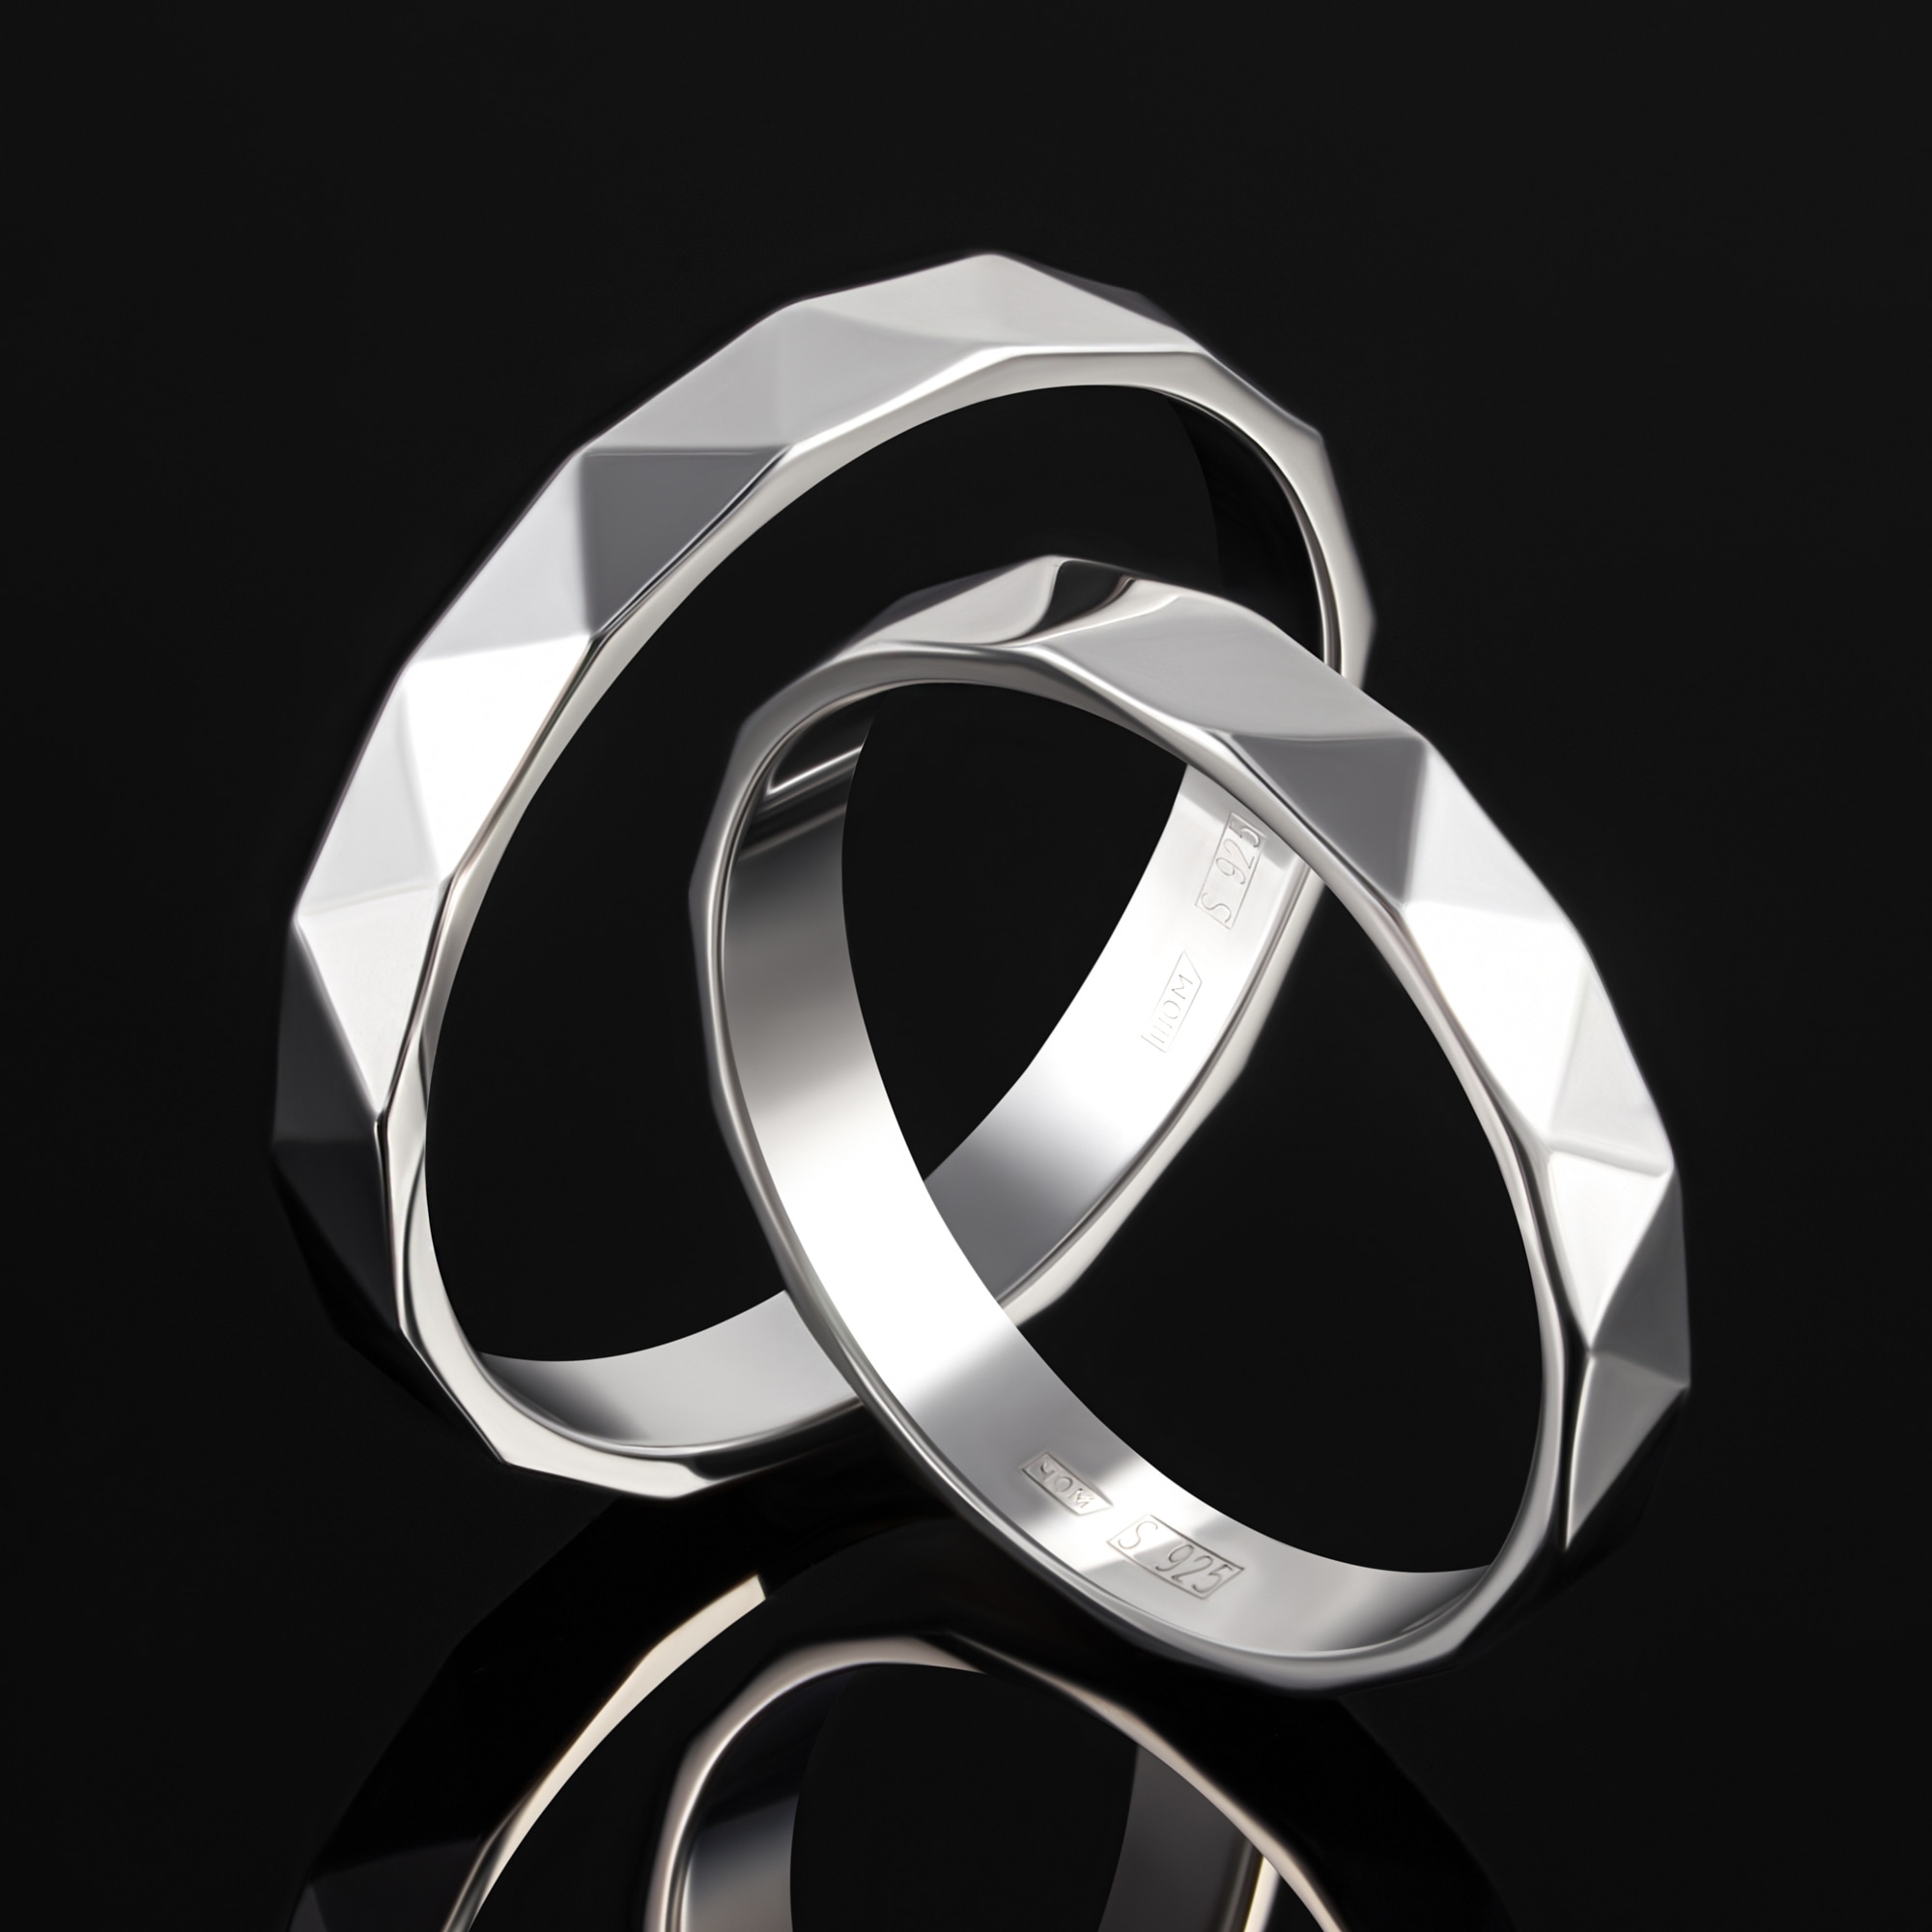 Серебряное кольцо обручальное Светлов К814-2009-23-00